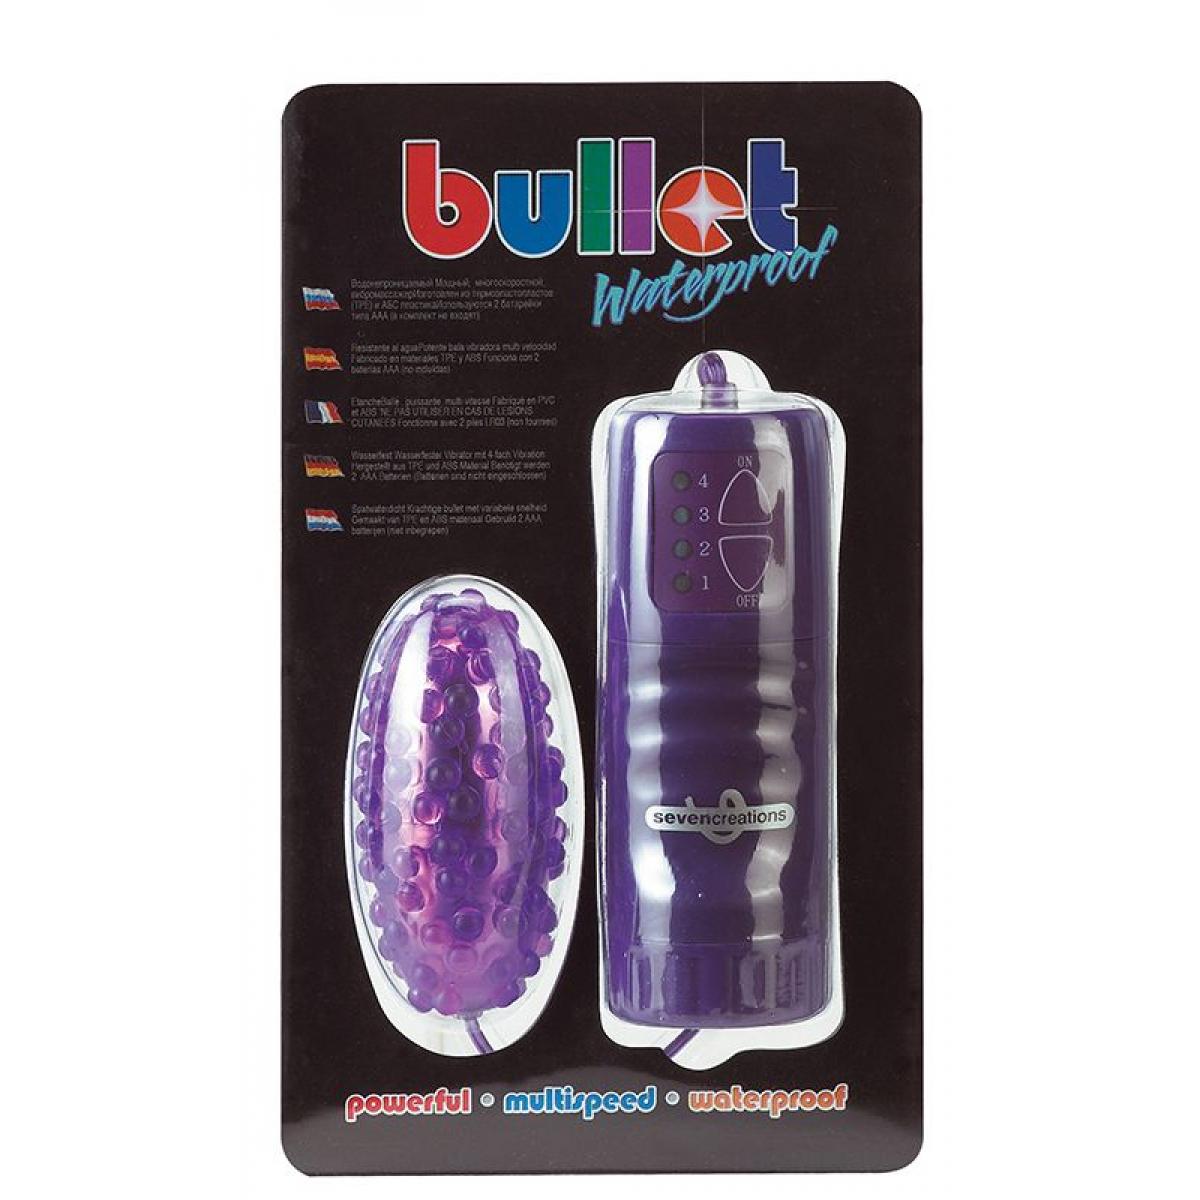 Фиолетовое водонепроницаемое виброяйцо с пупырышками